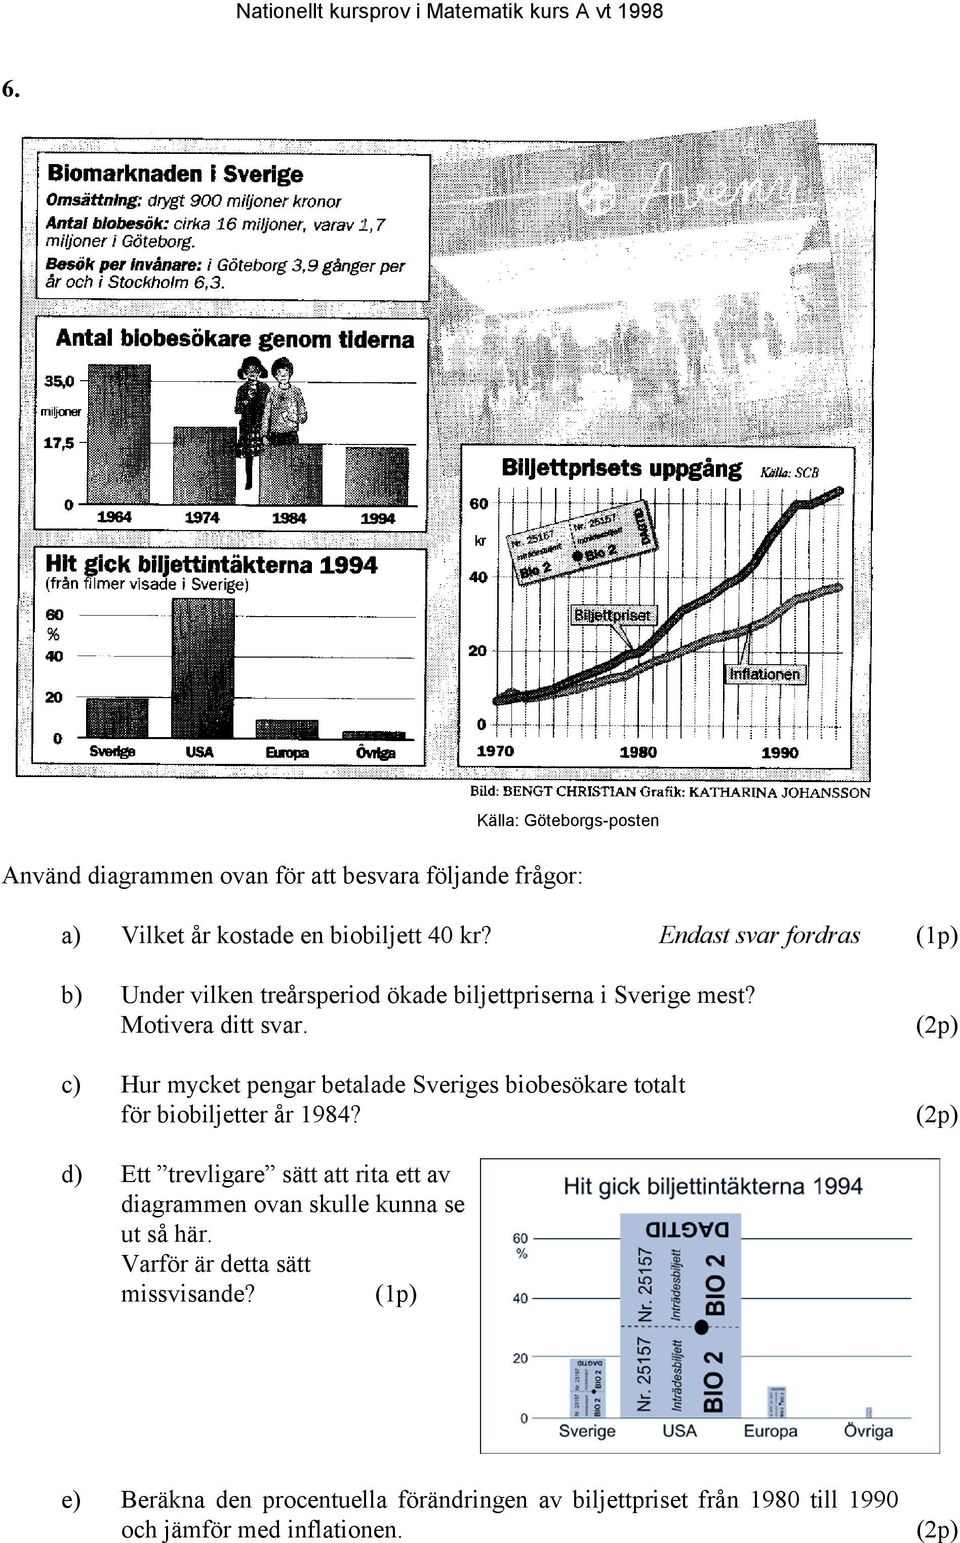 c) Hur mycket pengar betalade Sveriges biobesökare totalt för biobiljetter år 1984?